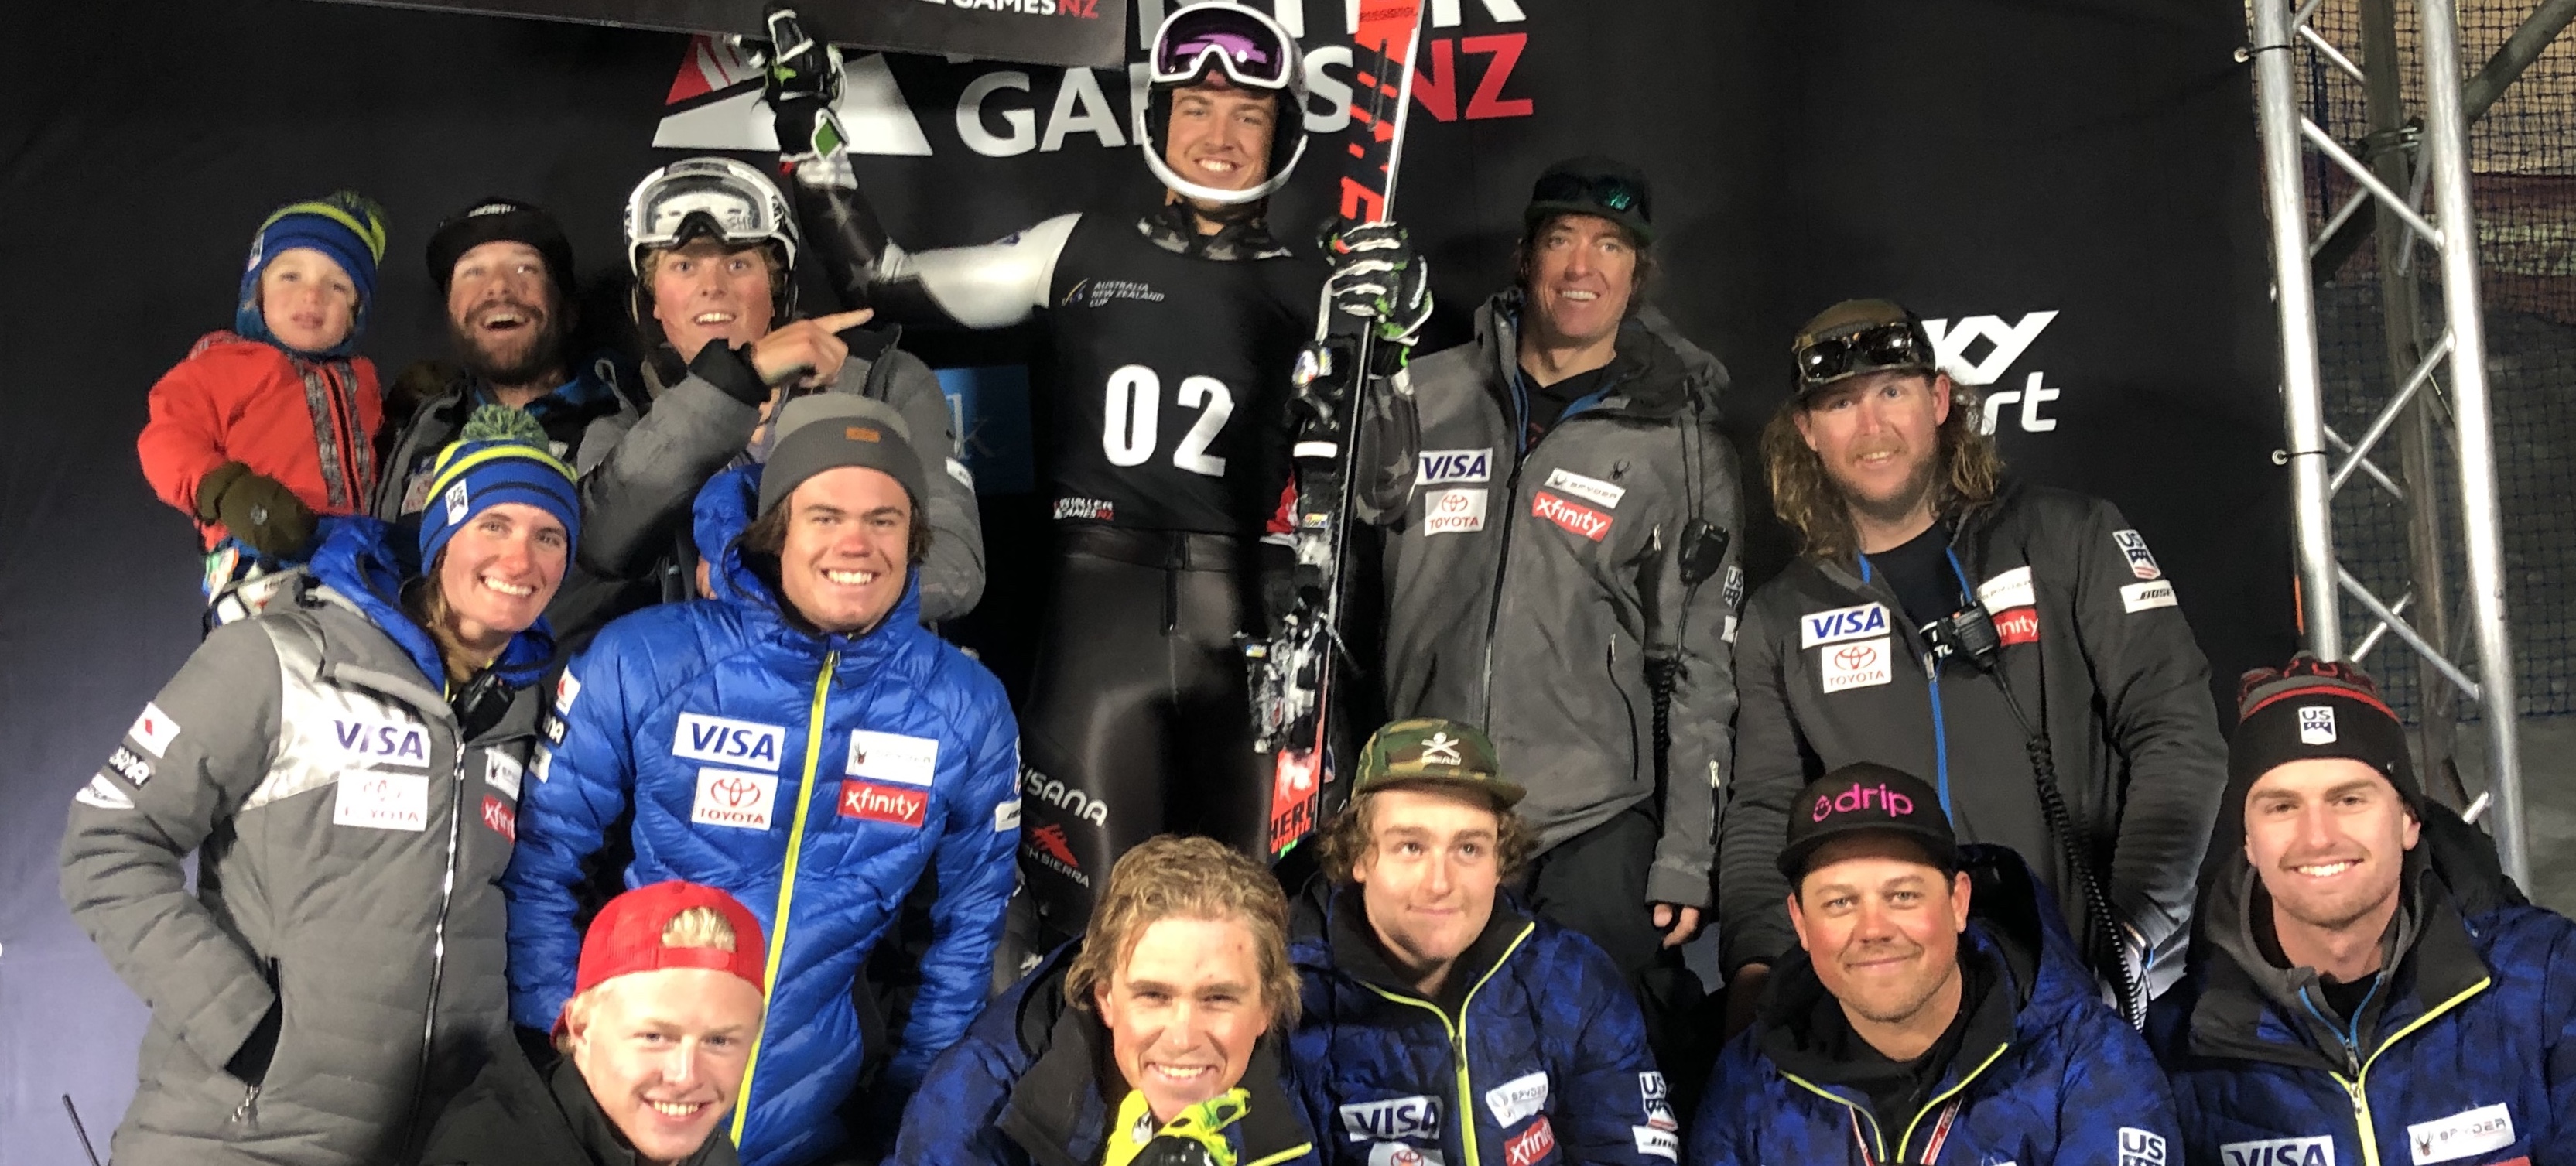 Luke Winters Wins Winter Games NZ Parallel Slalom 